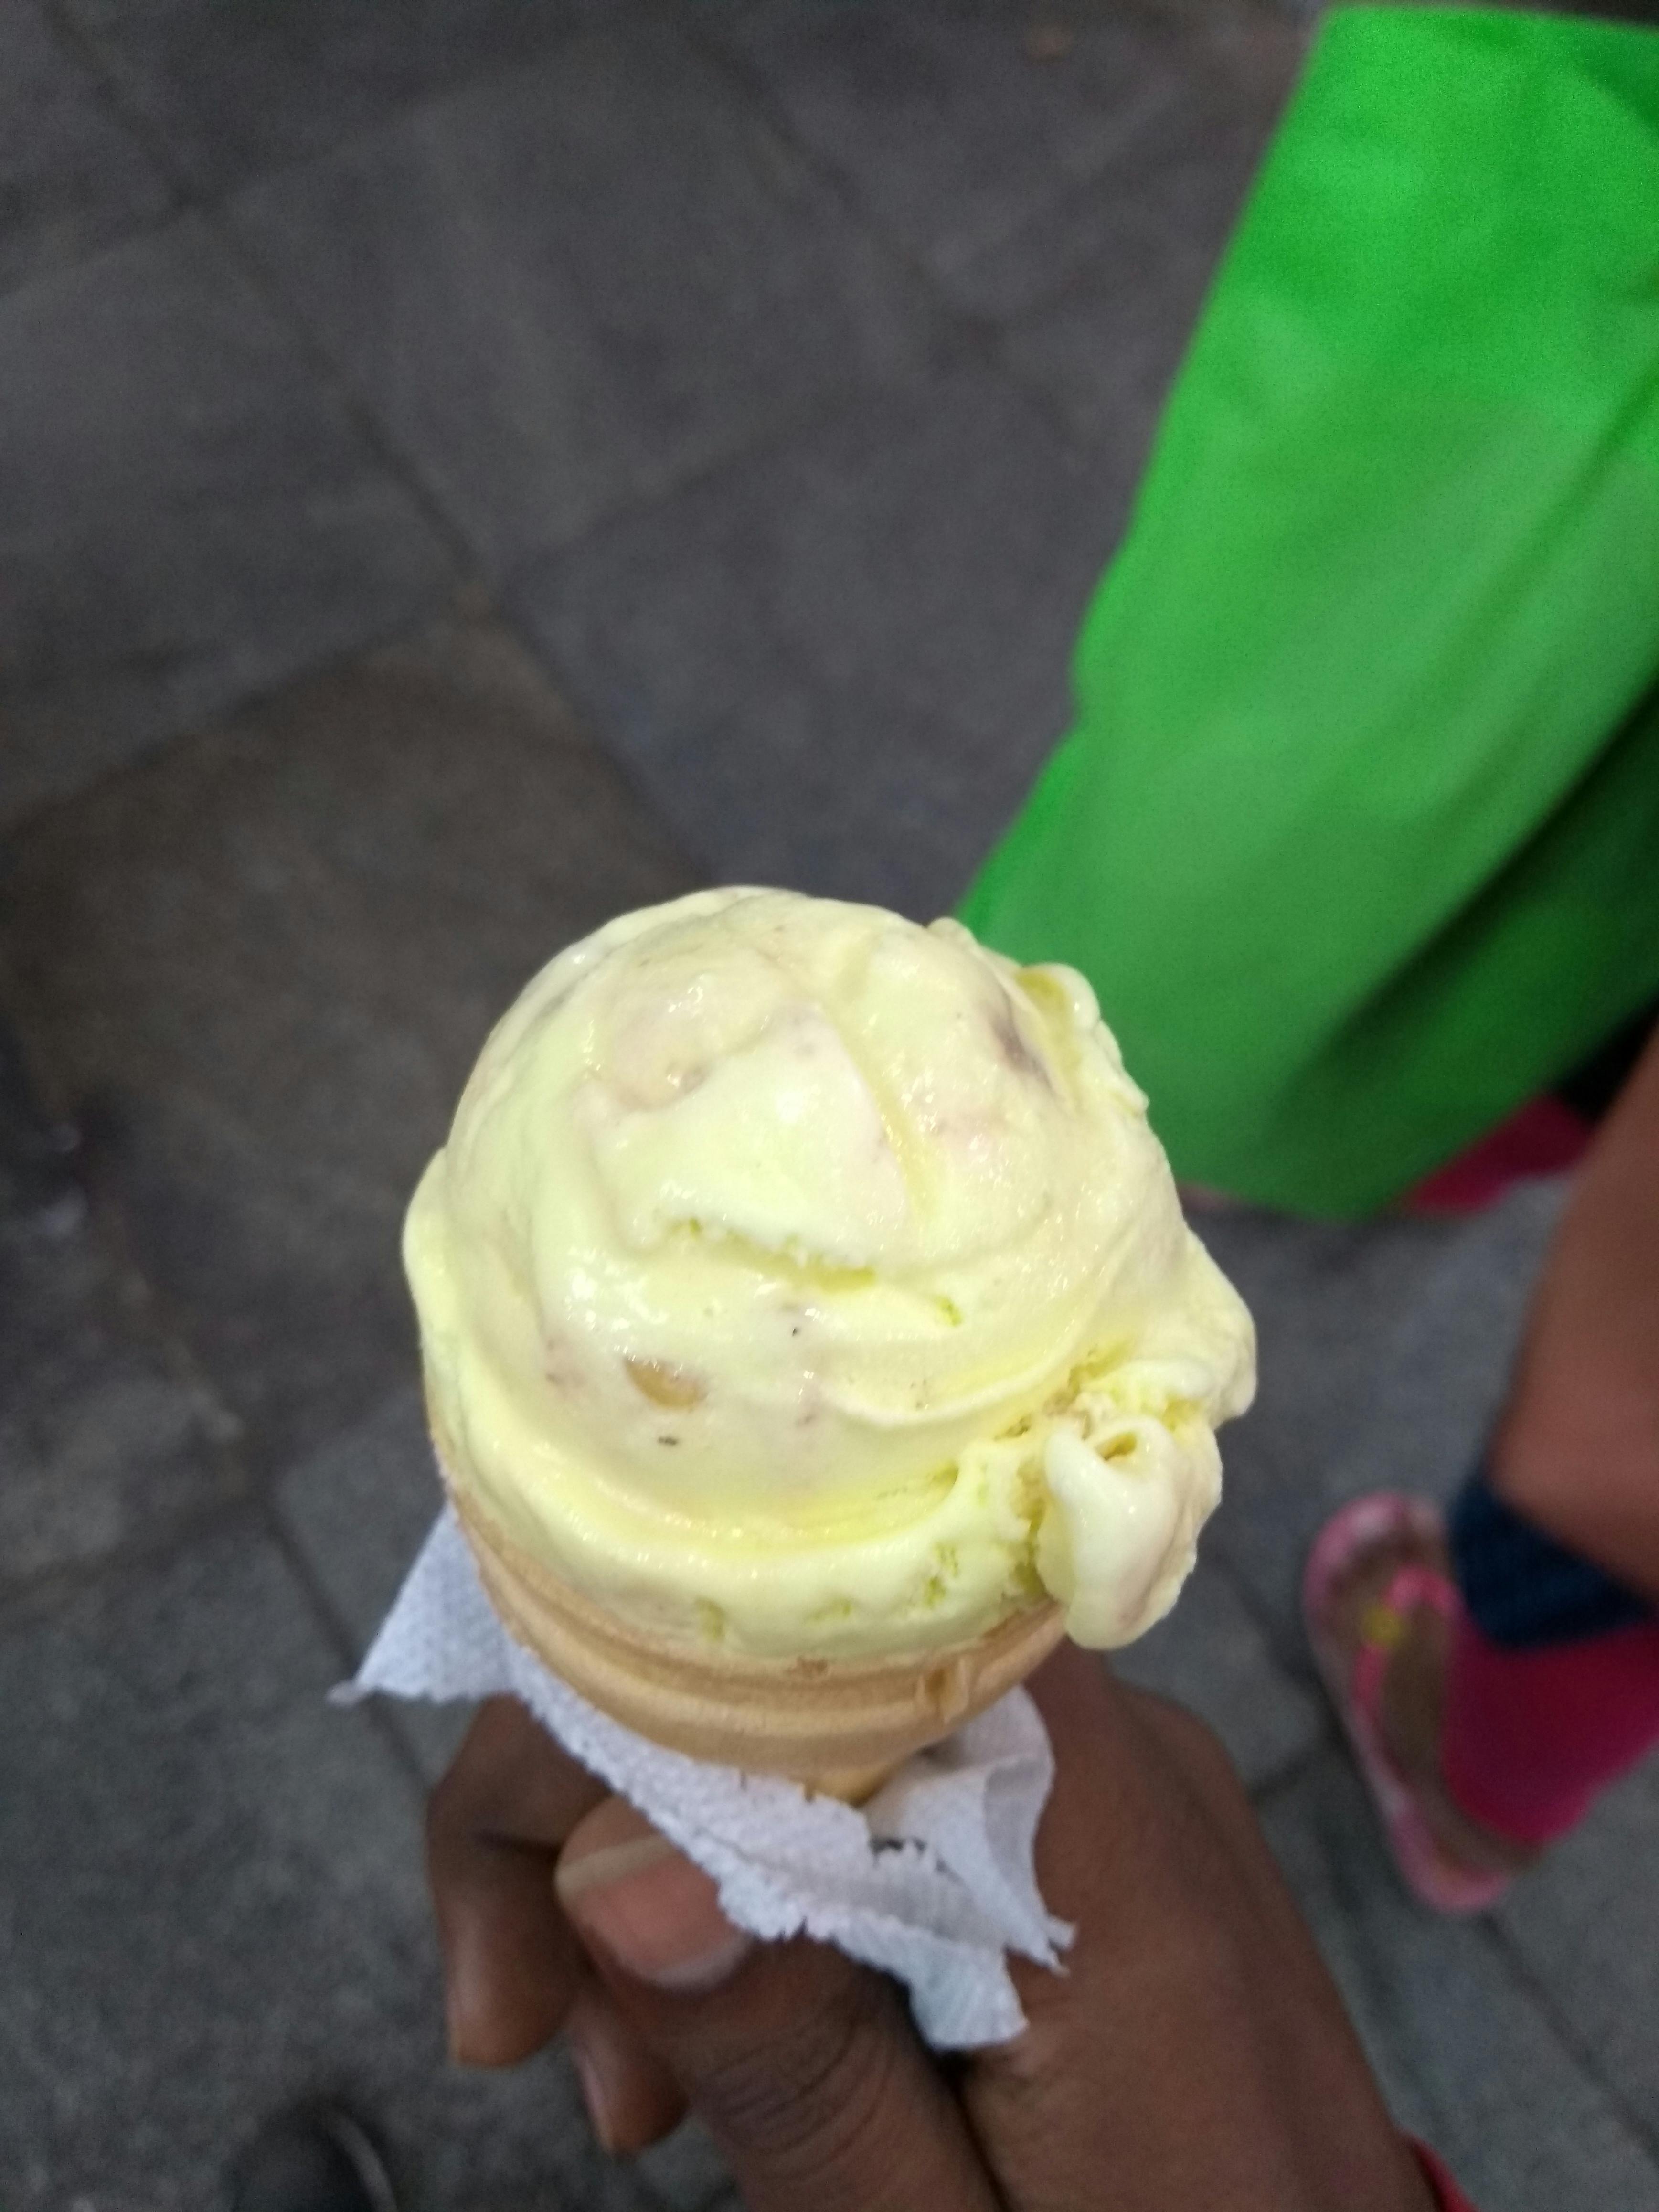 Free stock photo of ice cream cone